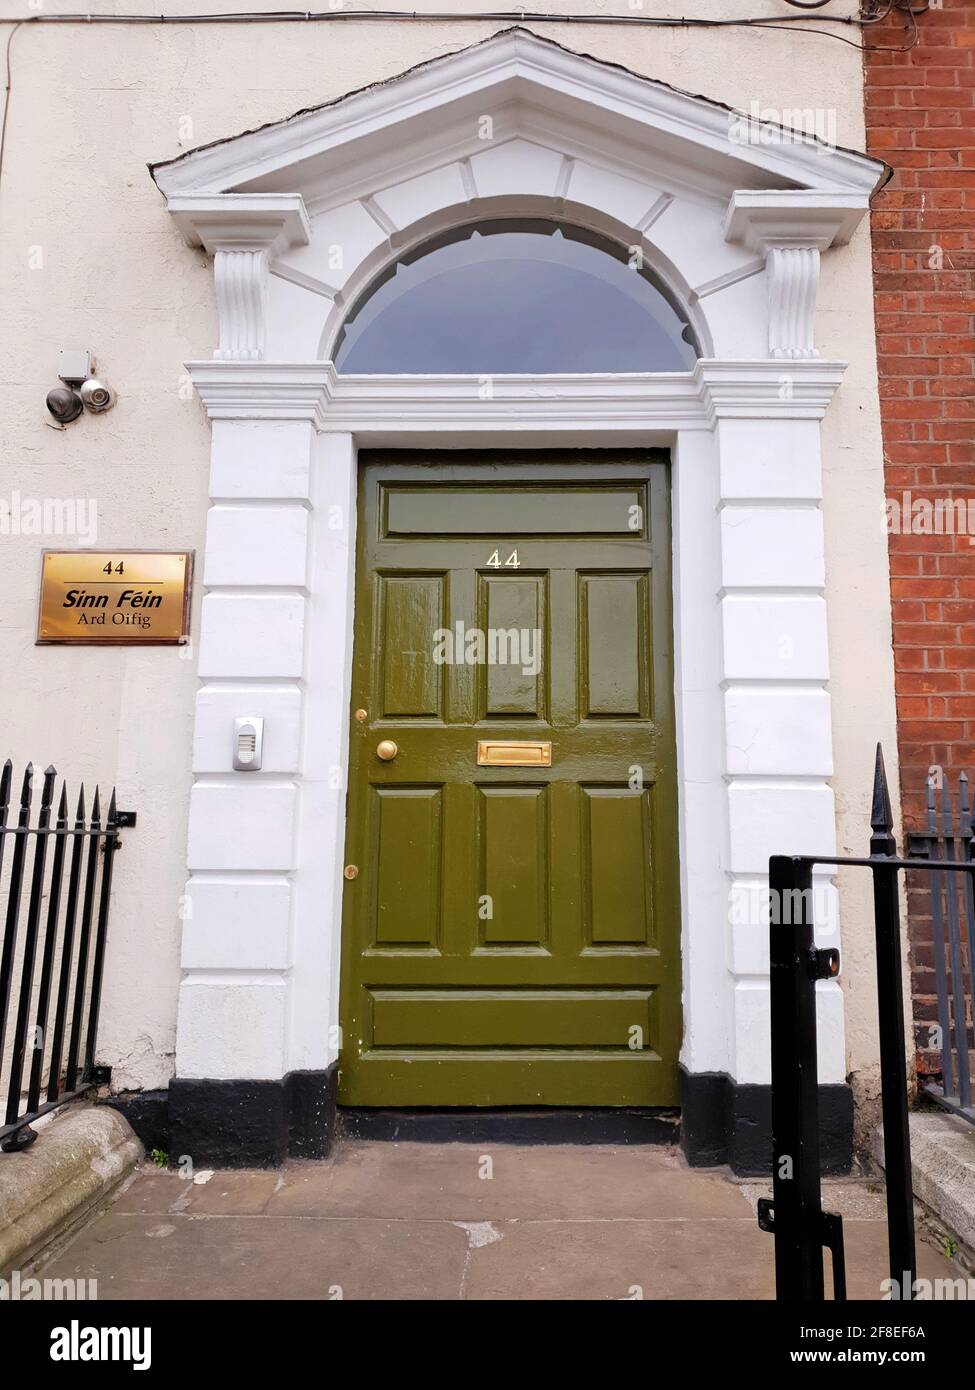 DUBLIN, IRLAND - 24. Jul 2019: Eingang zum Hauptquartier der Sinn Fein (irische republikanische politische Partei) in Dublin, Irland. Traditionelle Tür o Stockfoto